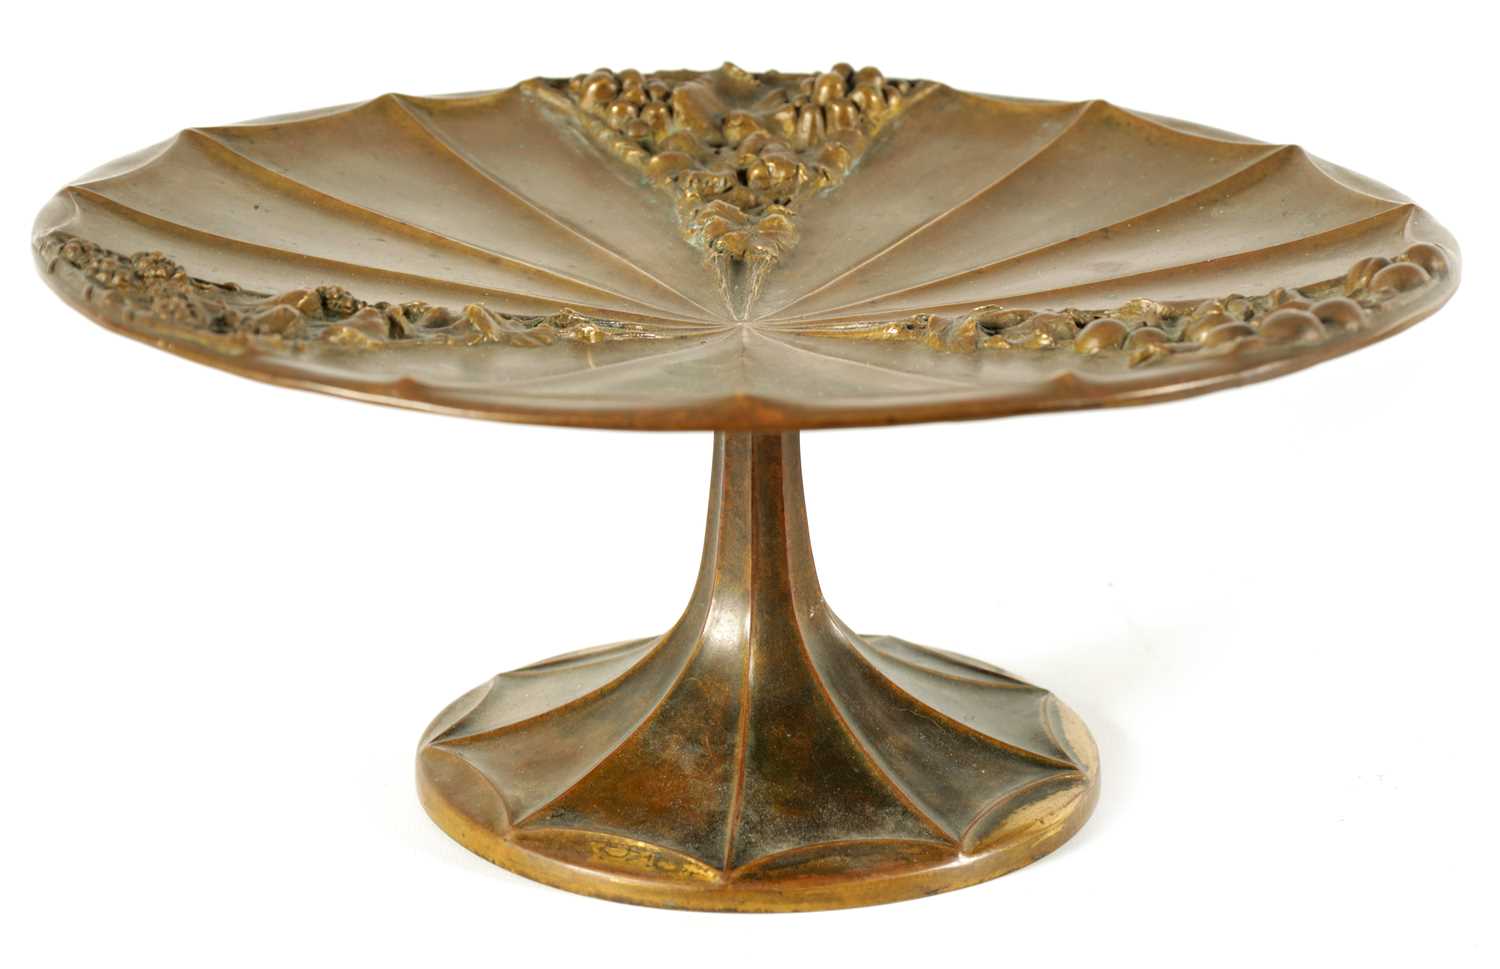 LE ROYER (1858 - 1939) AN ART NOUVEAU CAST BRONZE TABLE TAZZA